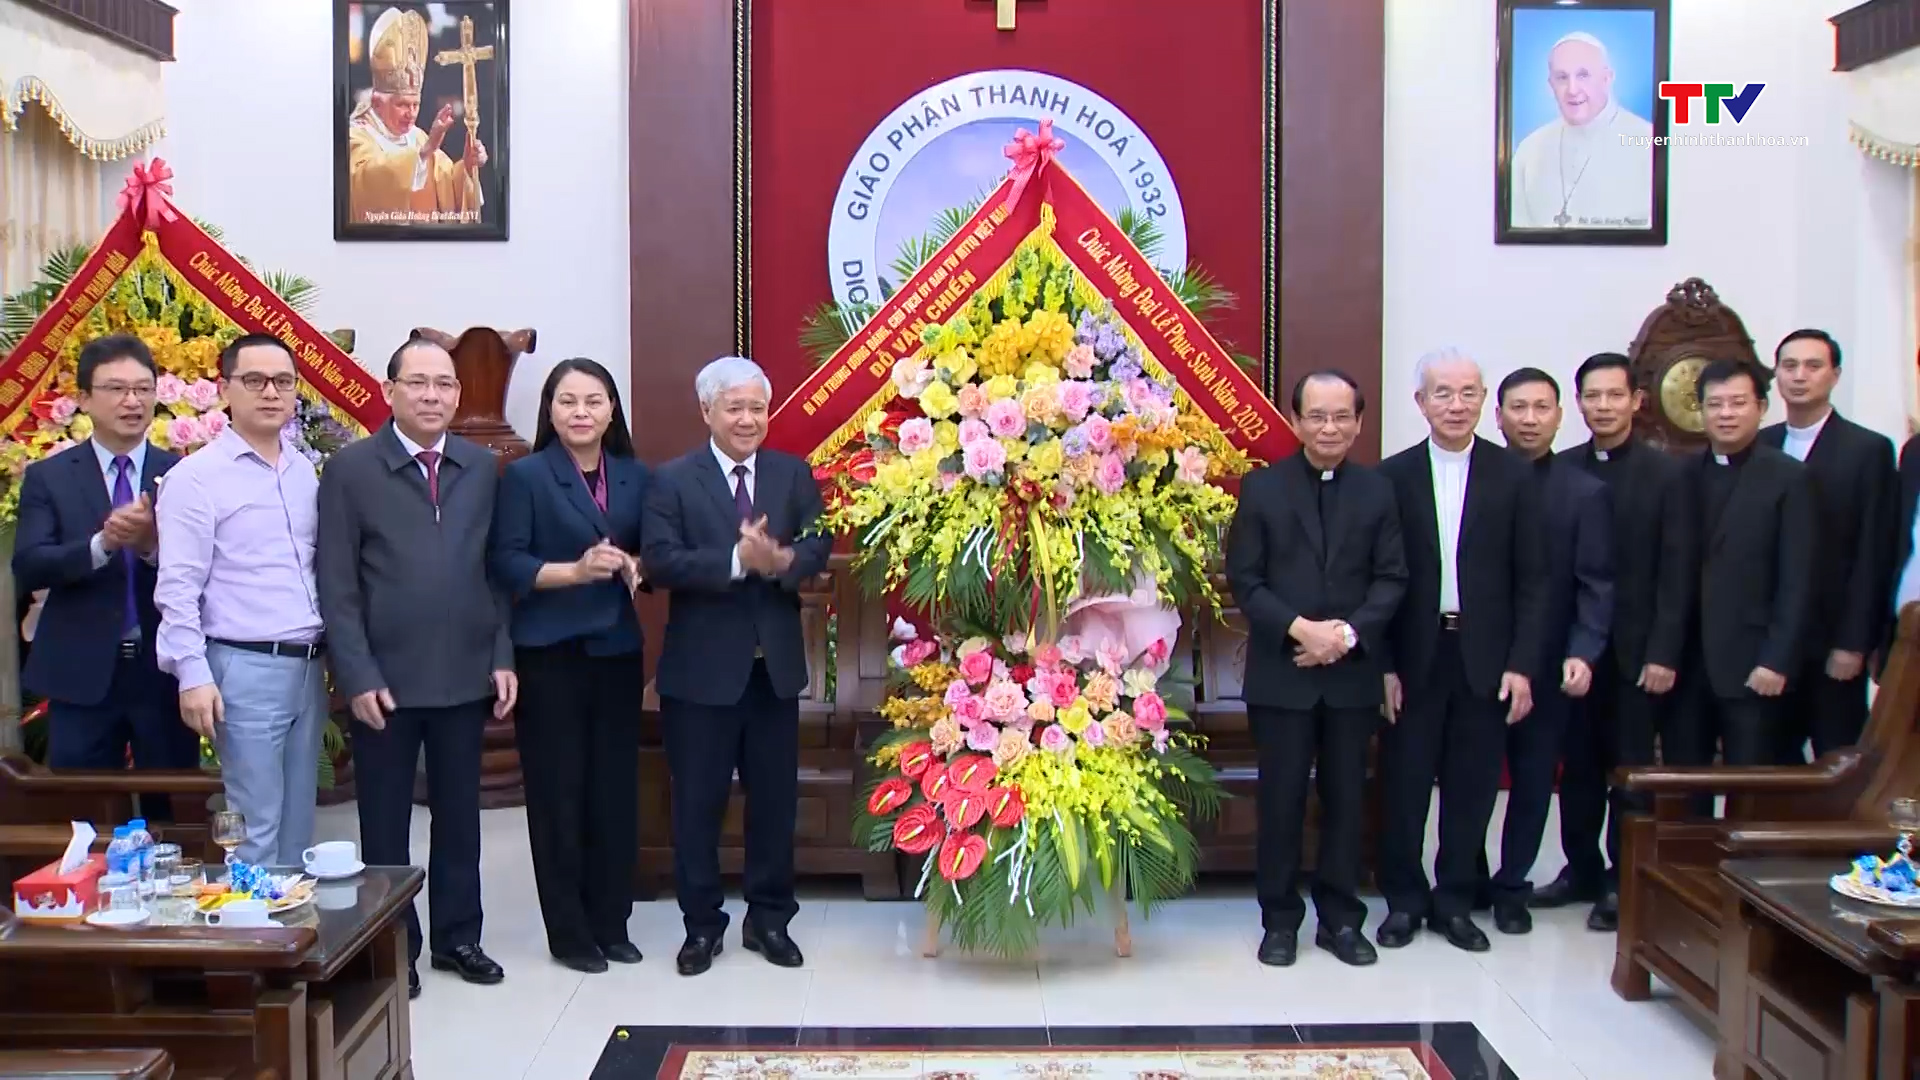 Lãnh đạo Ủy ban Trung ương Mặt trận tổ quốc Việt Nam và lãnh đạo tỉnh chúc mừng Tòa giám mục Thanh Hóa - Ảnh 2.